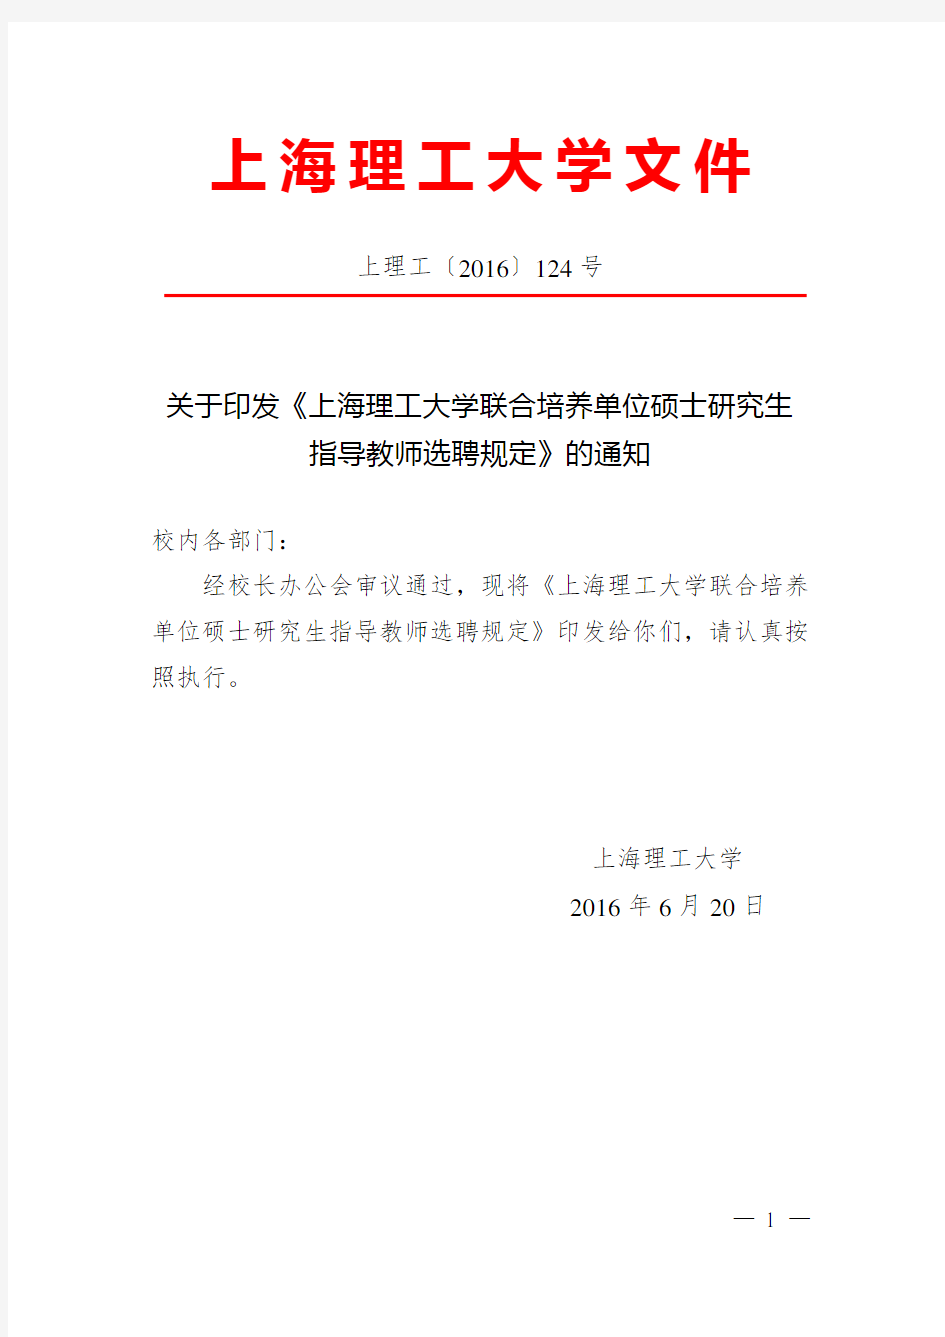 关于印发《上海理工大学联合培养单位硕士研究生指导教师选聘规定》的通知